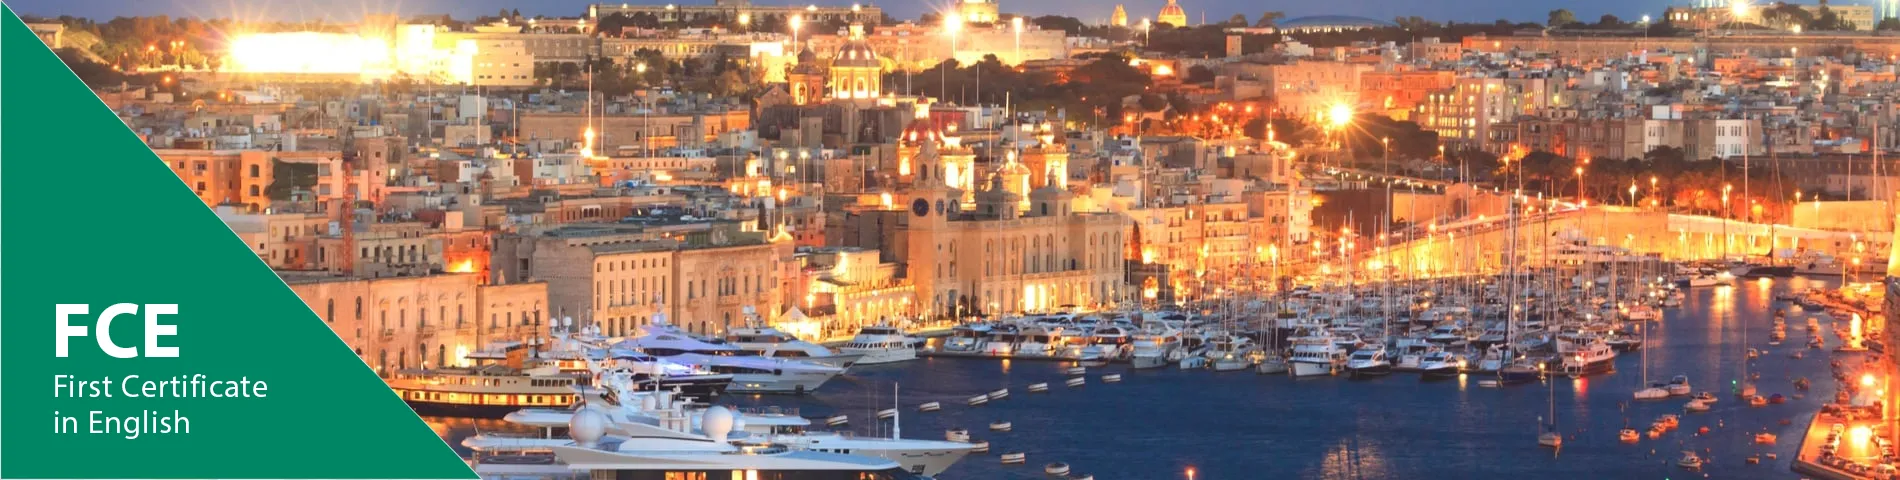 Valletta - 